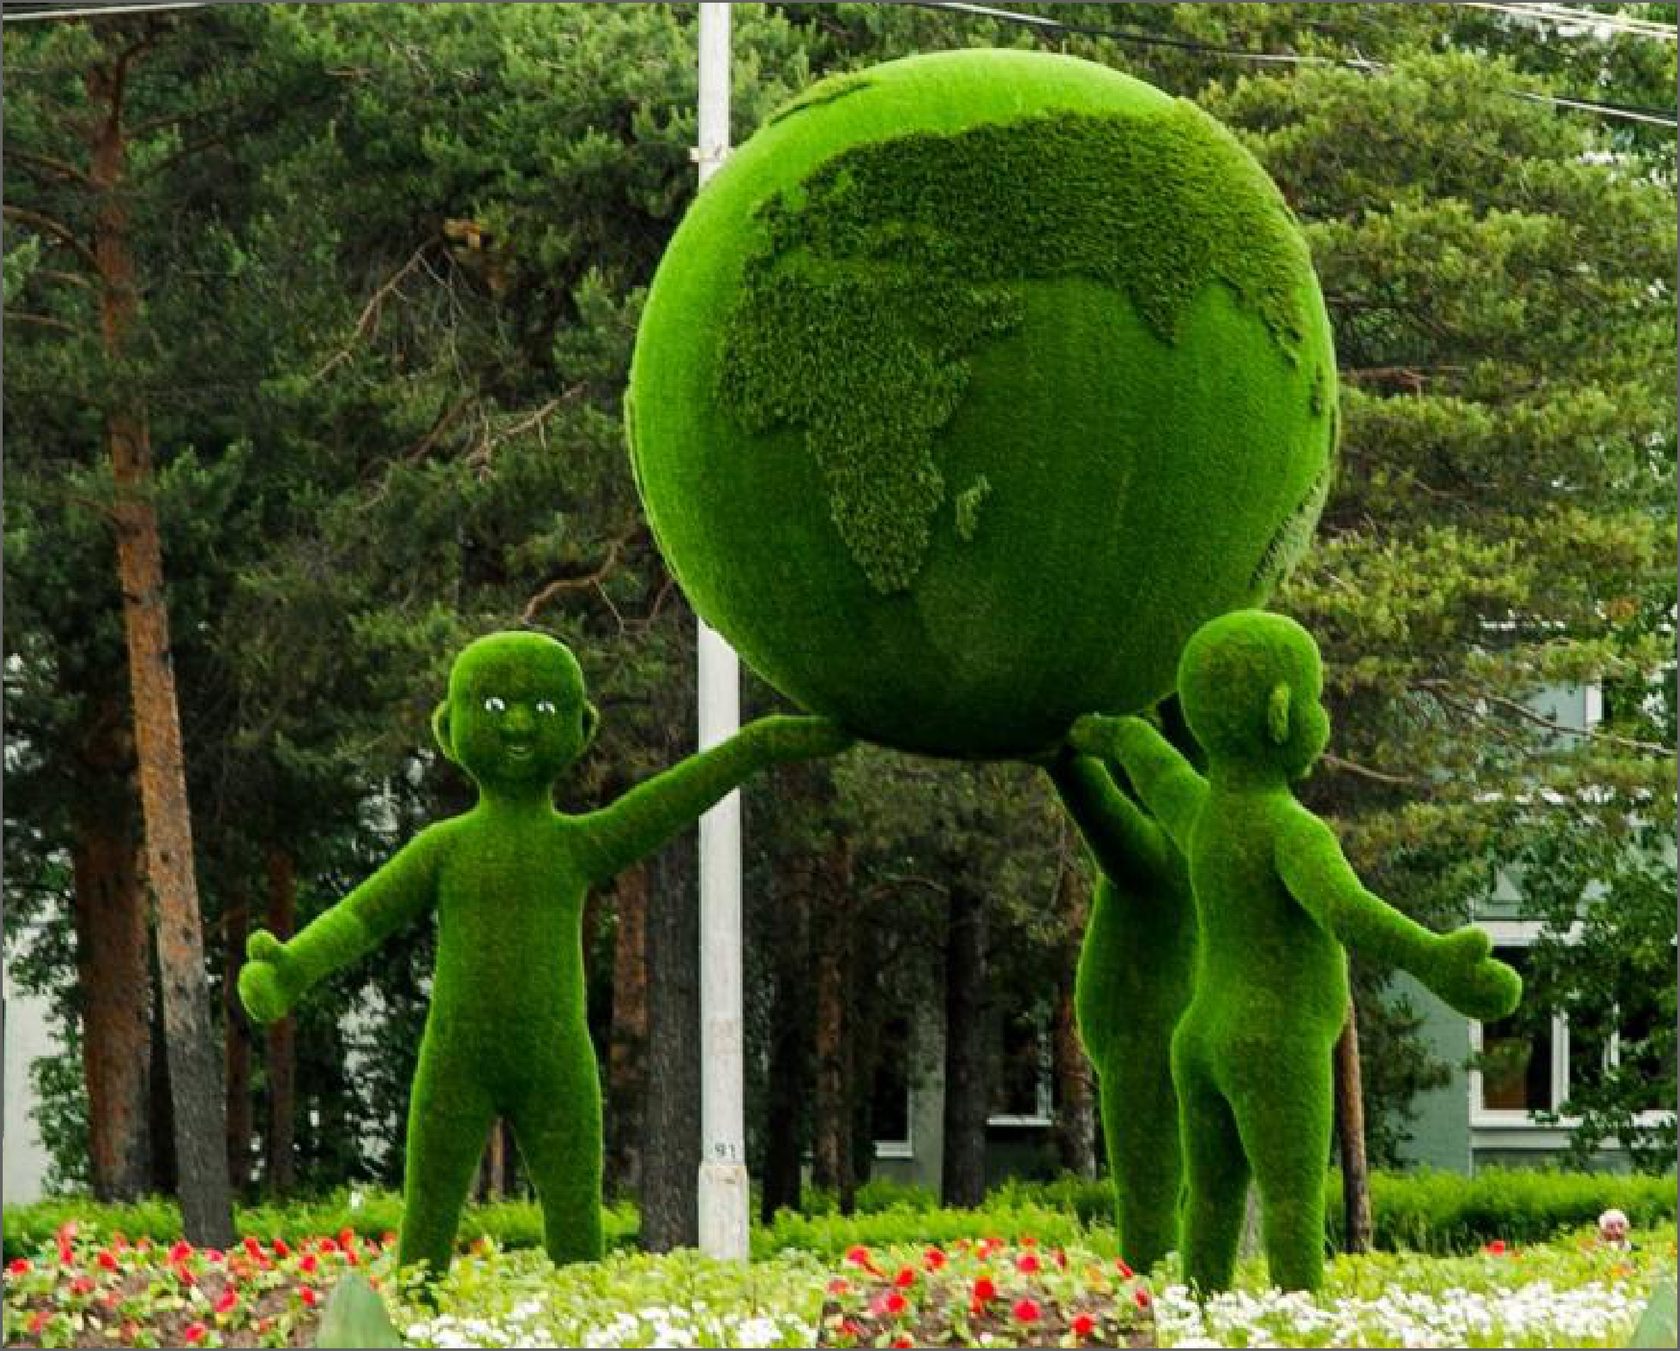 Игры света и тени среди зеленых фигур в парке